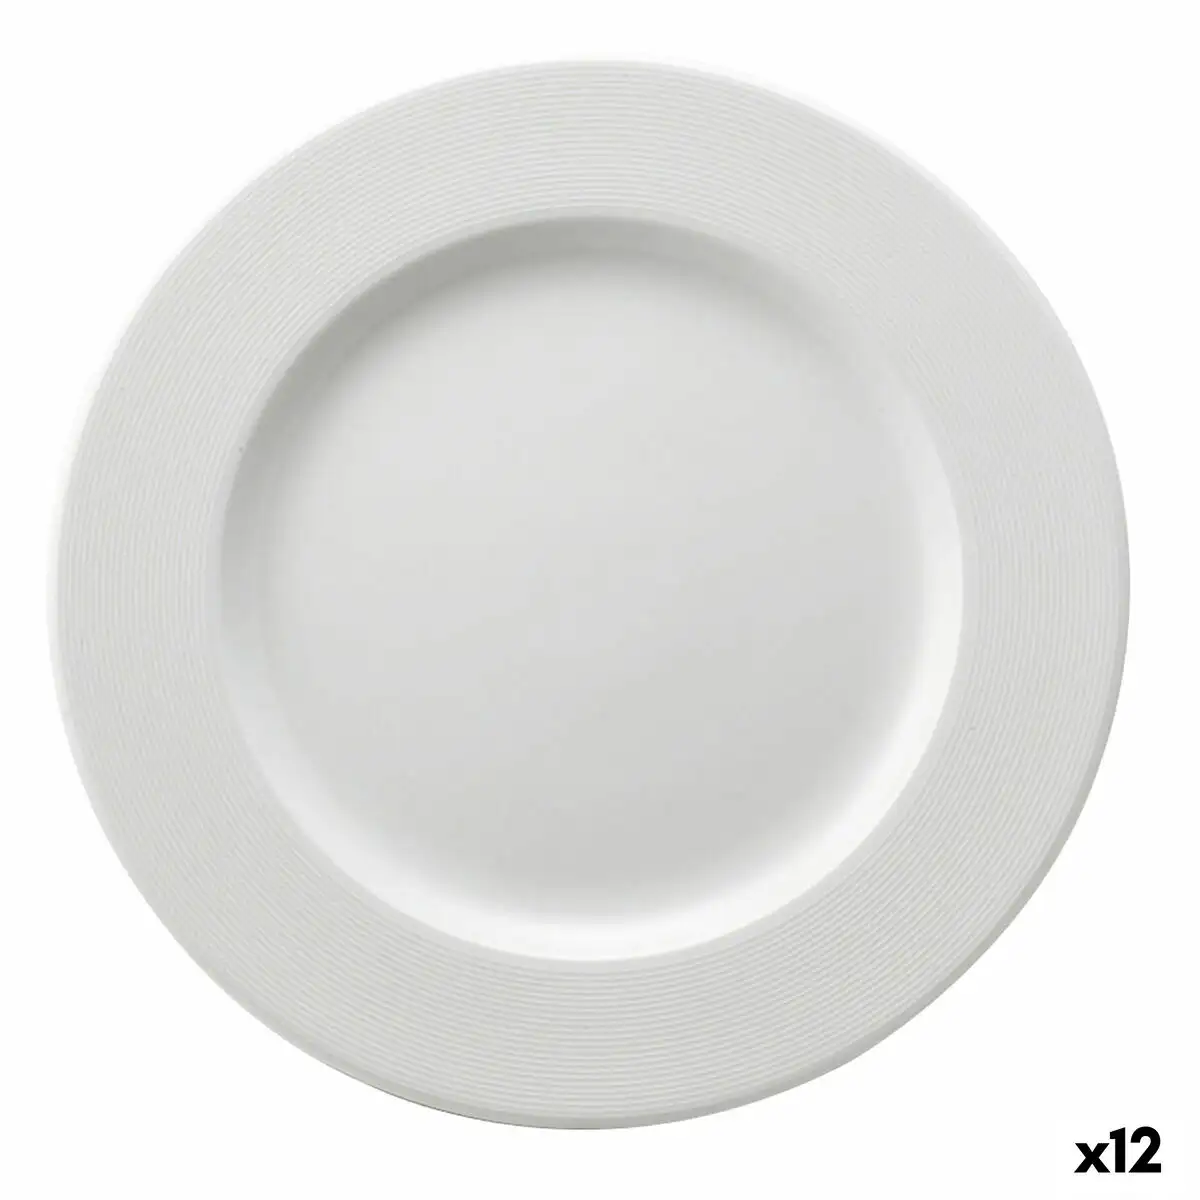 Assiette plate ariane orba ceramique blanc o 27 cm 12 unites _8491. DIAYTAR SENEGAL - Où le Shopping Devient une Aventure Culturelle. Plongez dans notre univers de produits qui célèbrent l'héritage et l'artisanat du Sénégal.